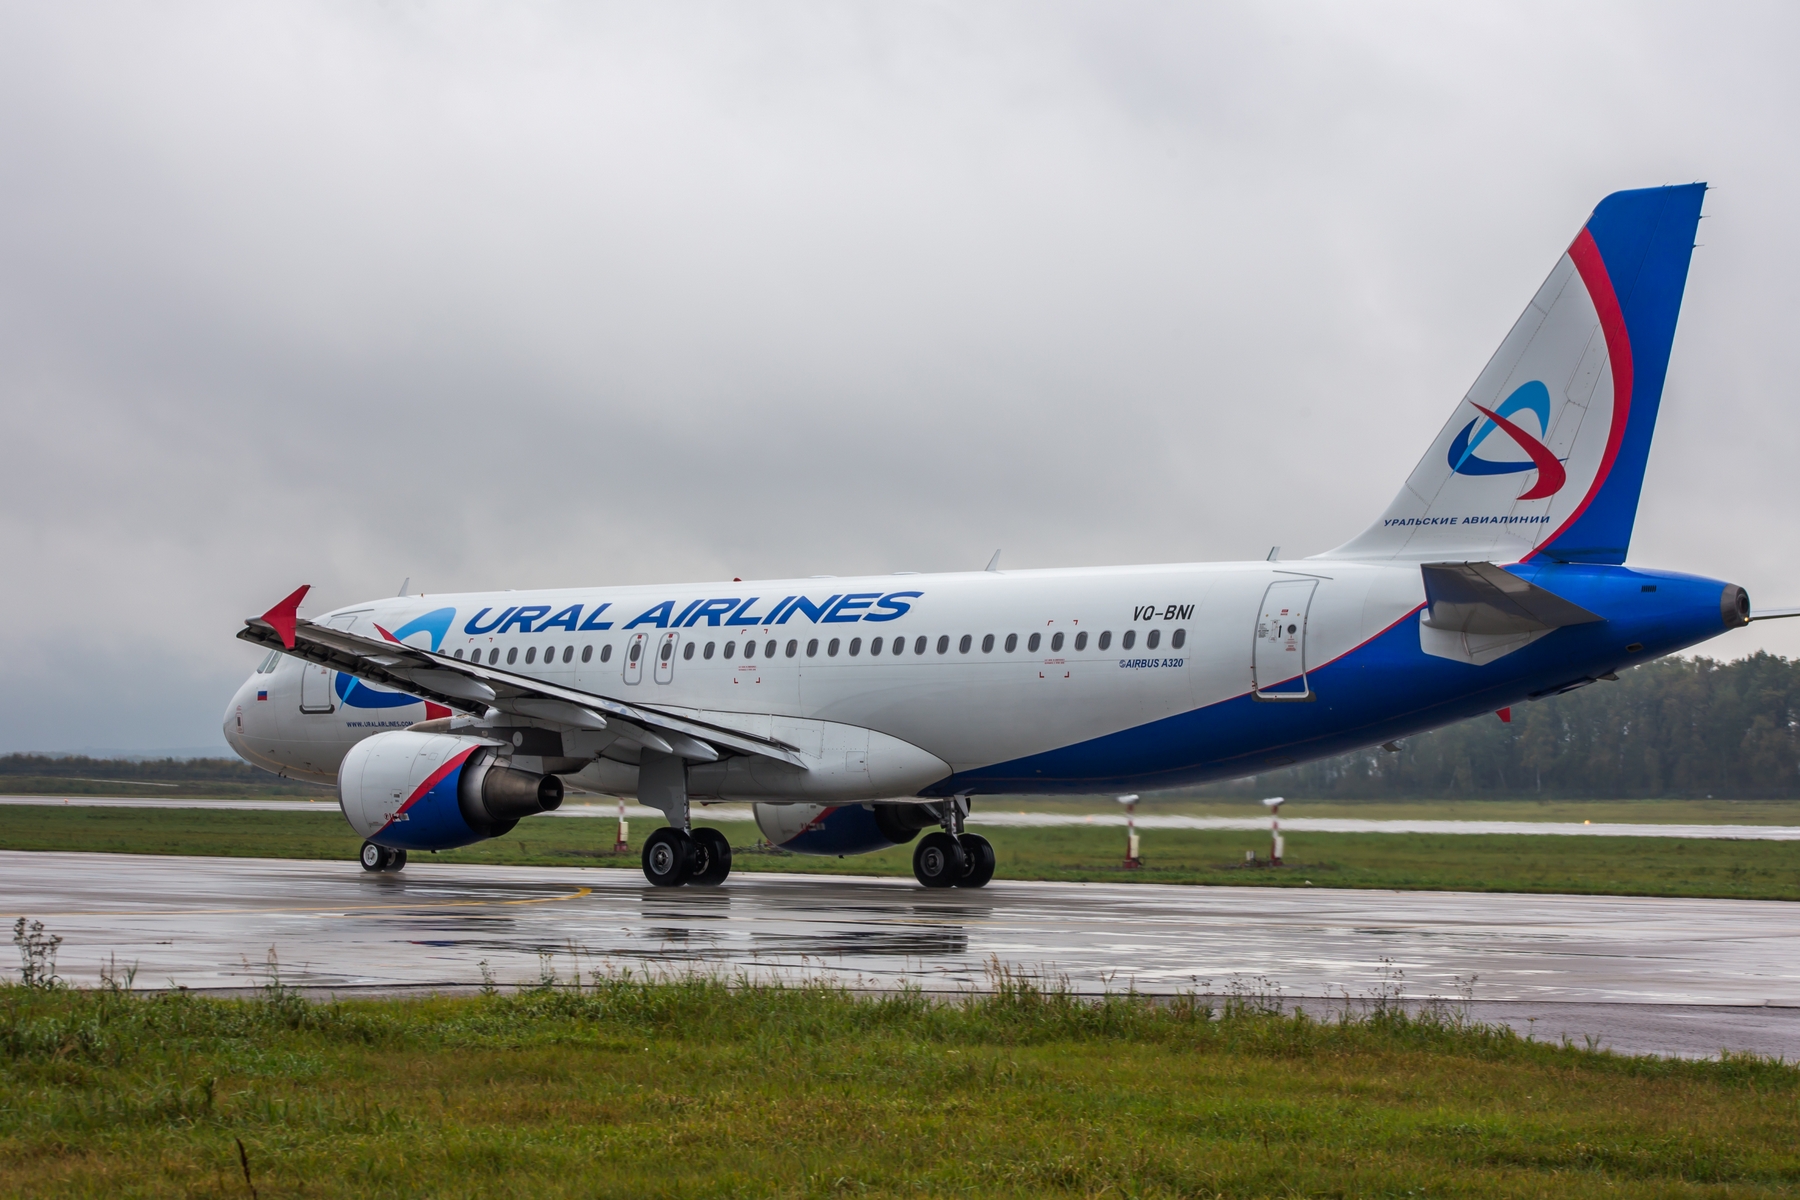  Экипаж самолета "Уральских авиалиний" обнаружил утечку топлива перед вылетом из Уфы